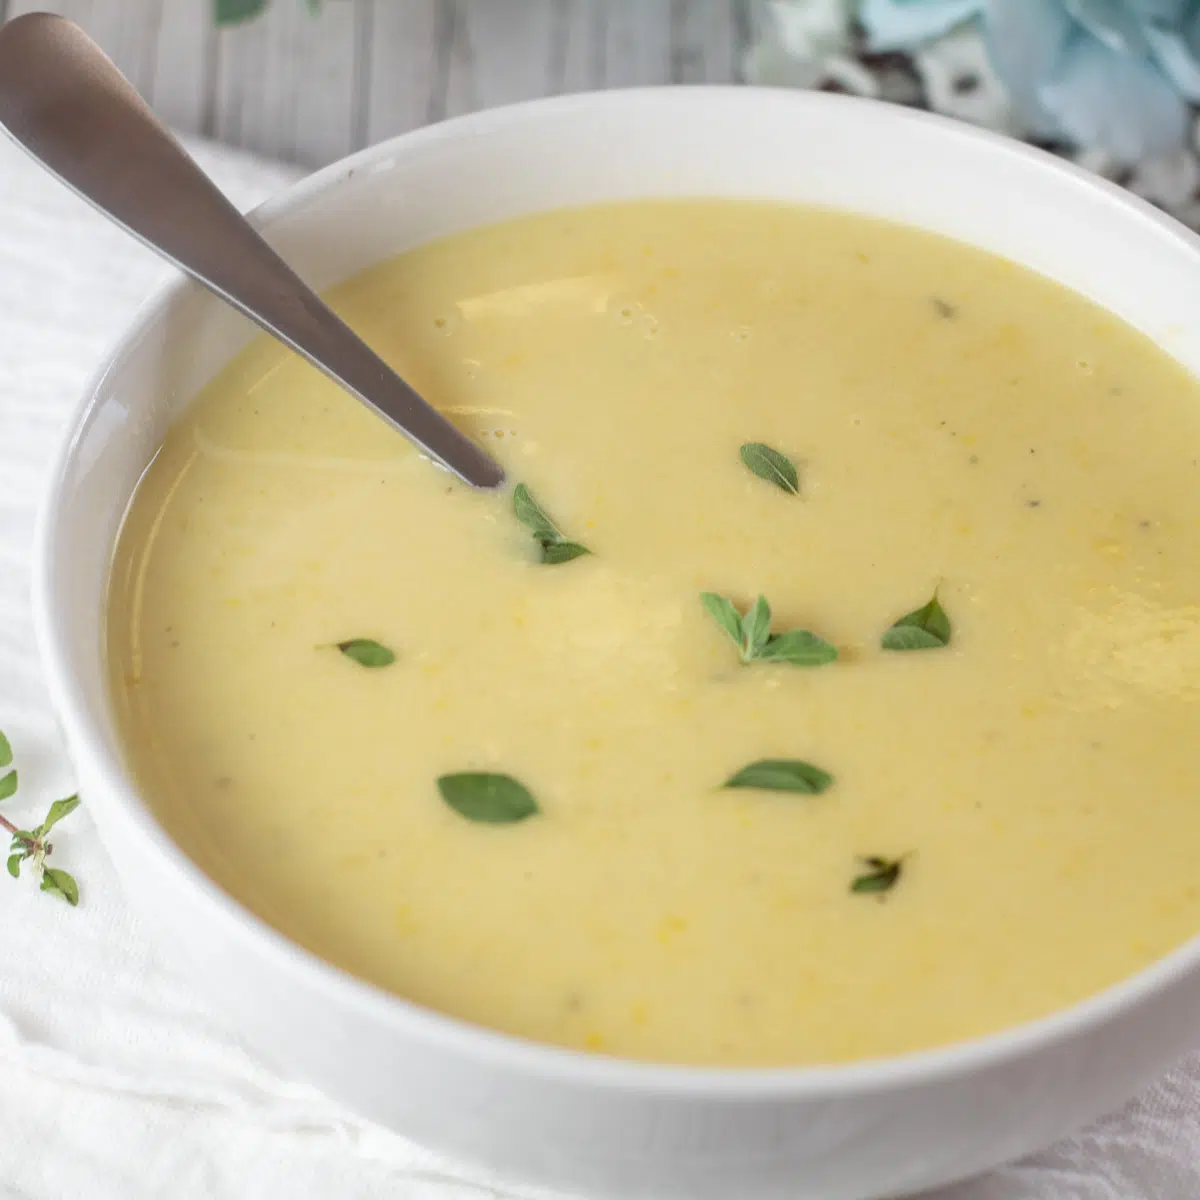 Gambar persegi sup labu kuning krem ​​dalam mangkuk putih.